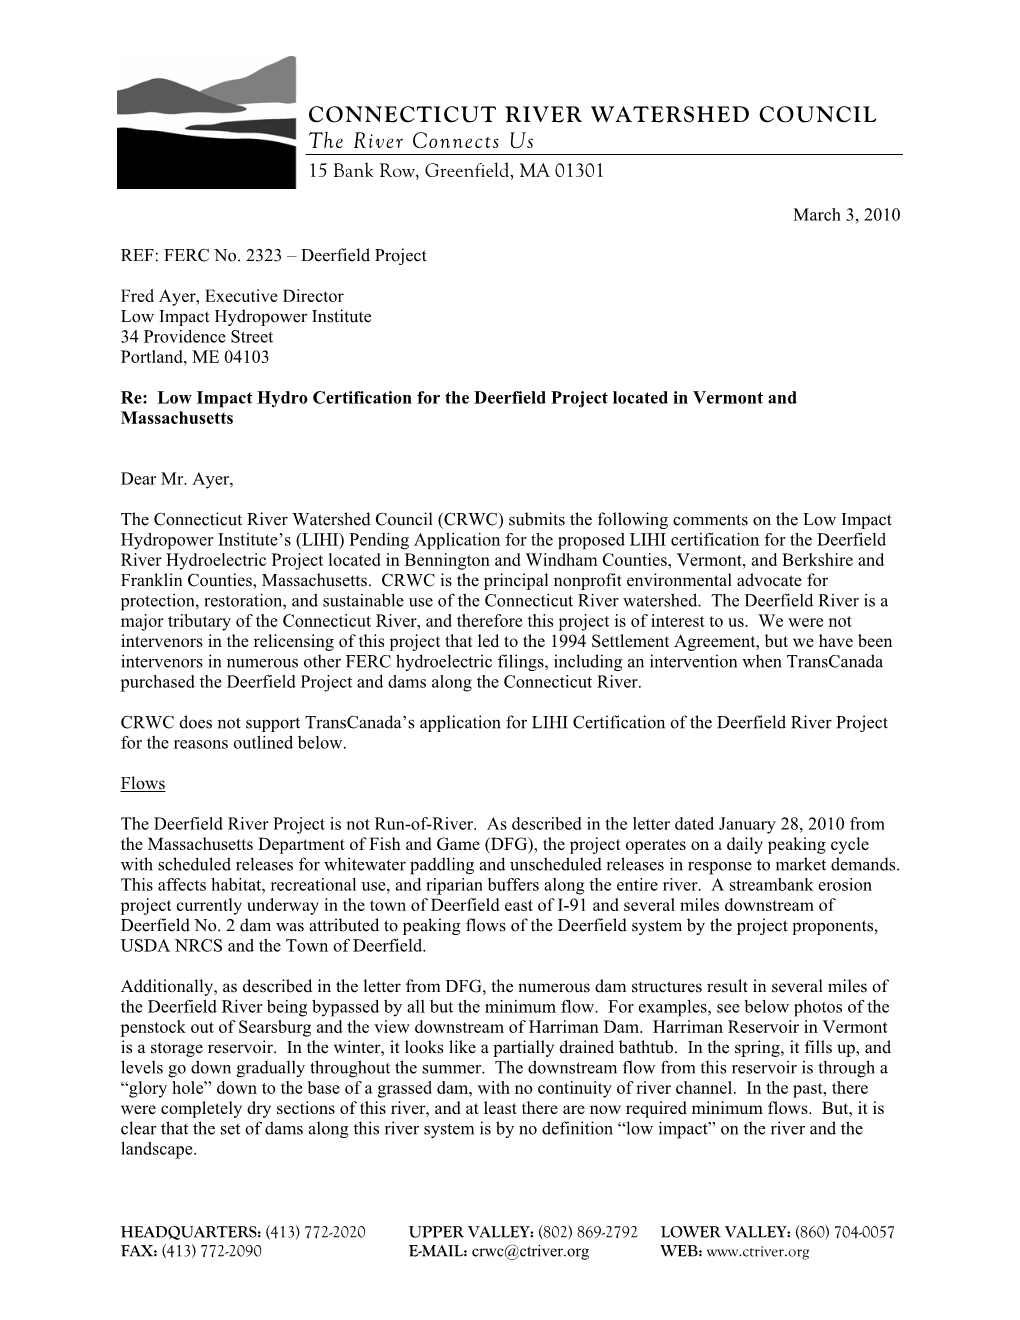 Connecticut River Watershed Council Comment Letter